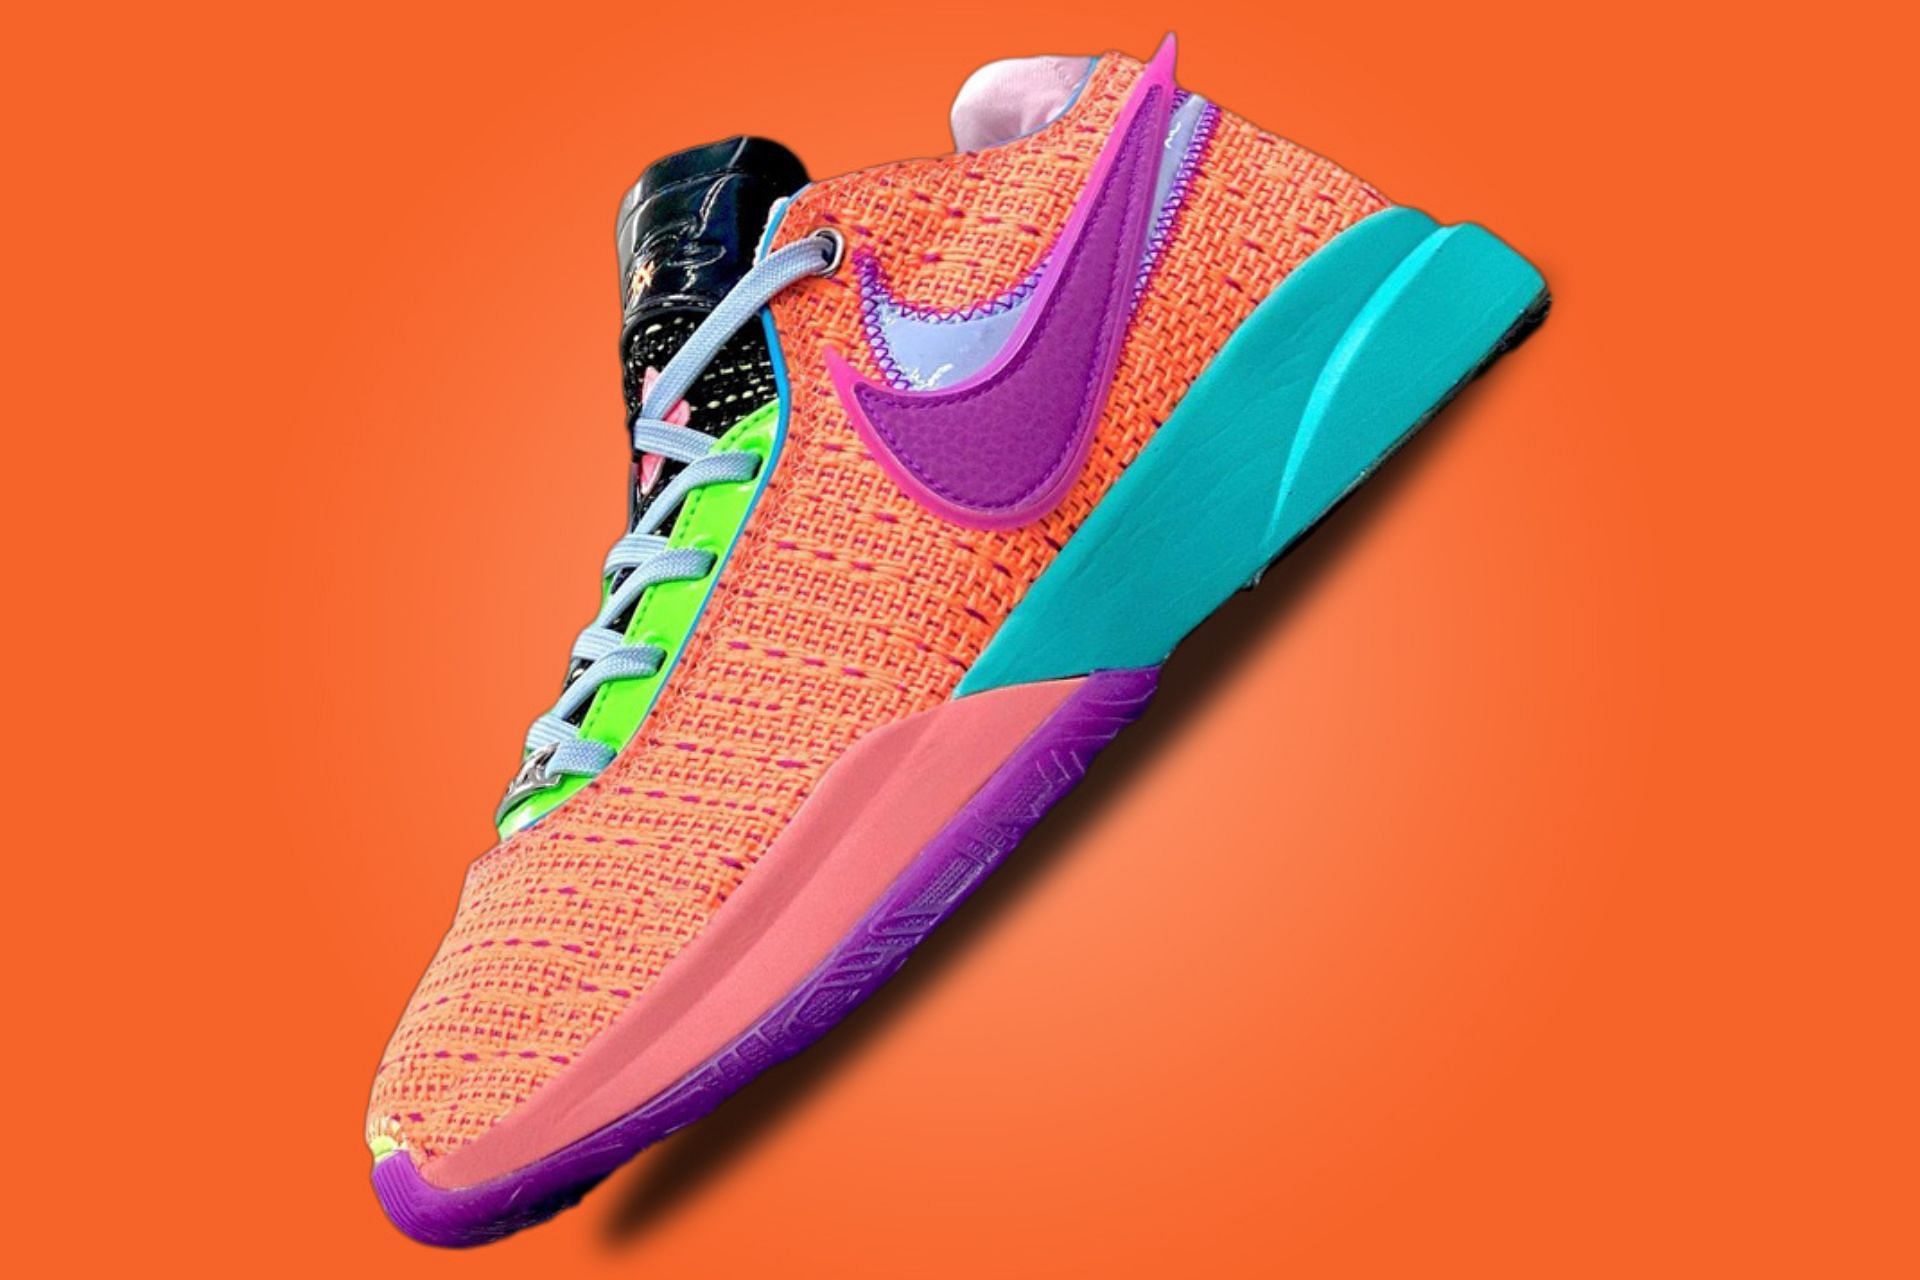 LeBron James Nike LeBron 20 “Chosen 1” shoes Where to buy, price